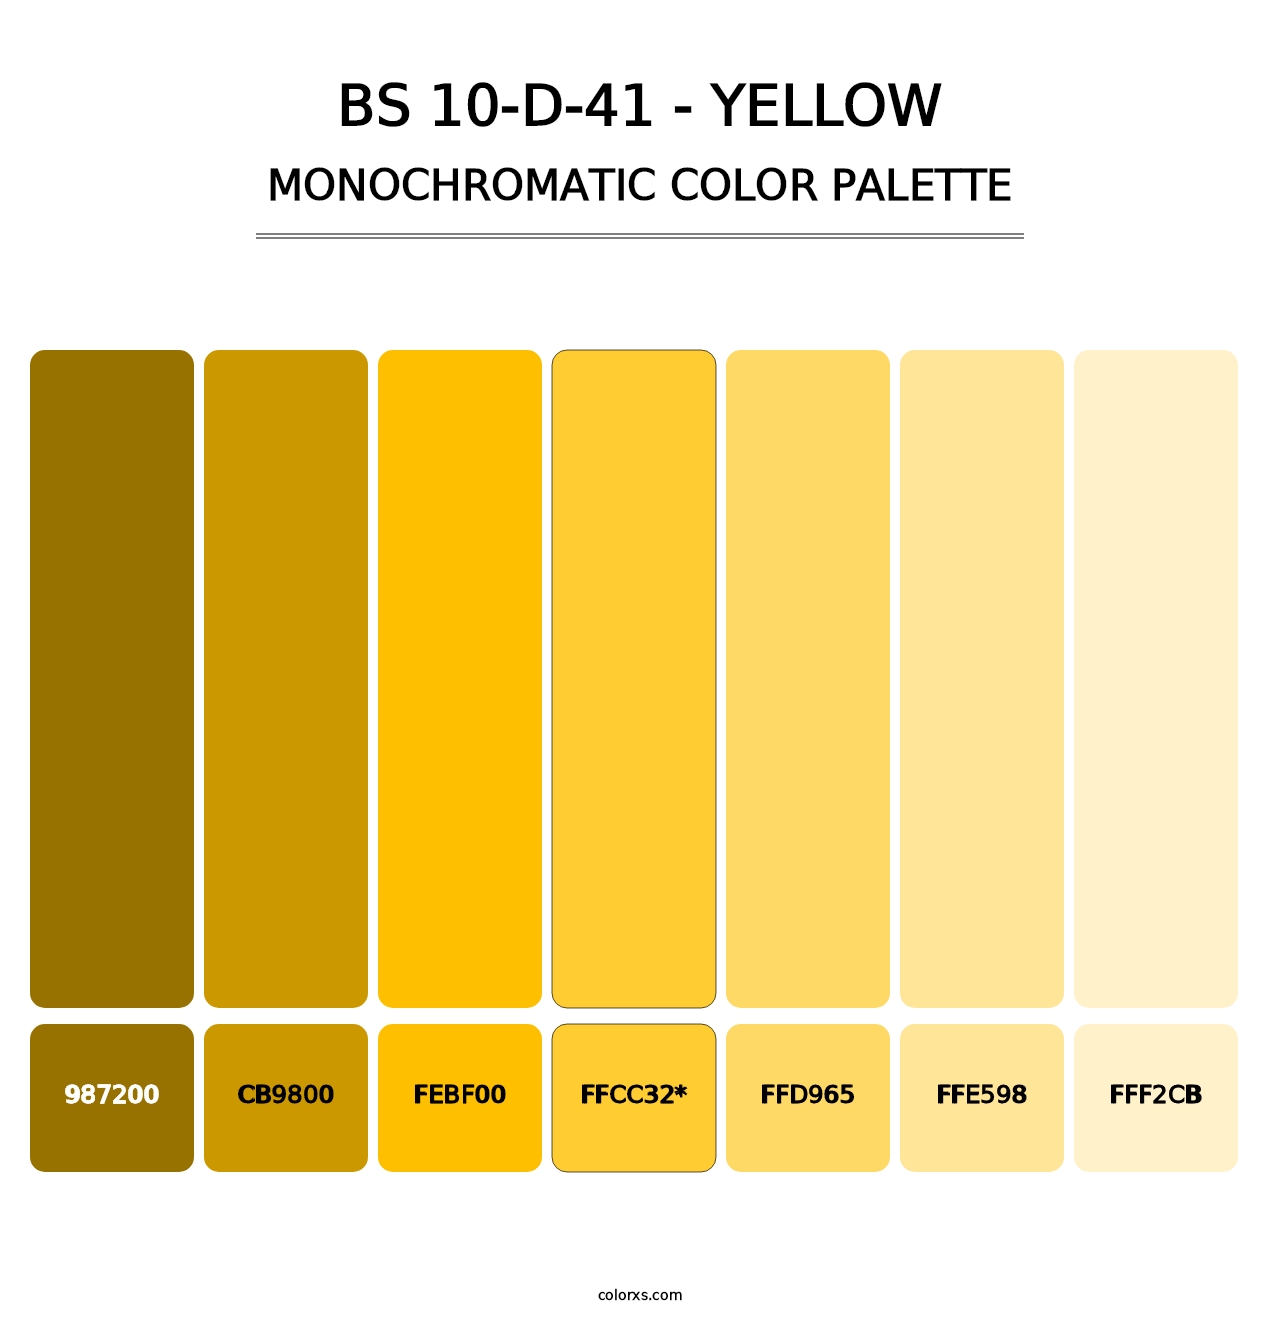 BS 10-D-41 - Yellow - Monochromatic Color Palette